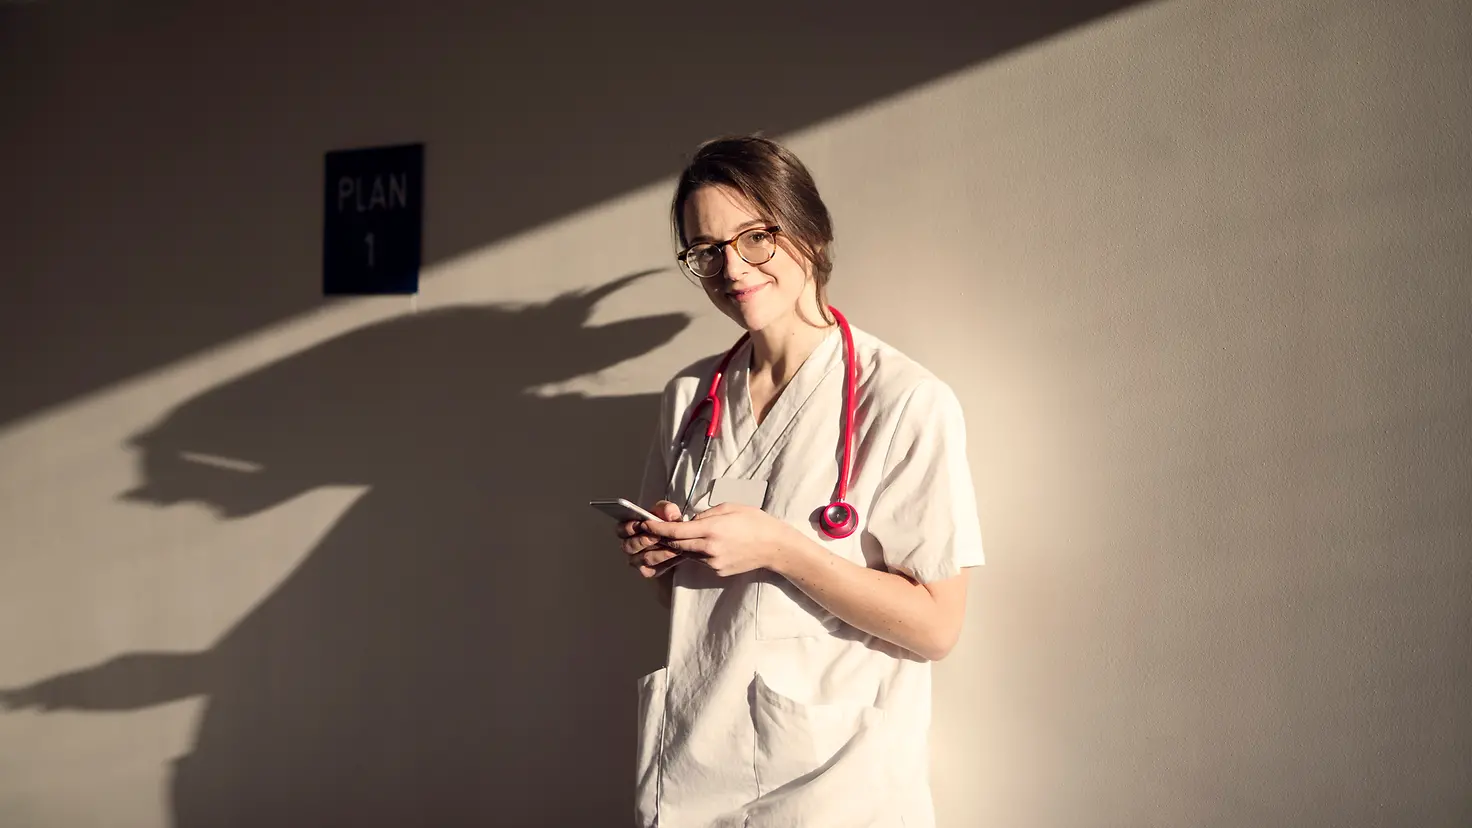 Eine Ärztin steht vor einer Wand, hält ihr Smartphone in der Hand und schaut lächelnd in die Kamera.